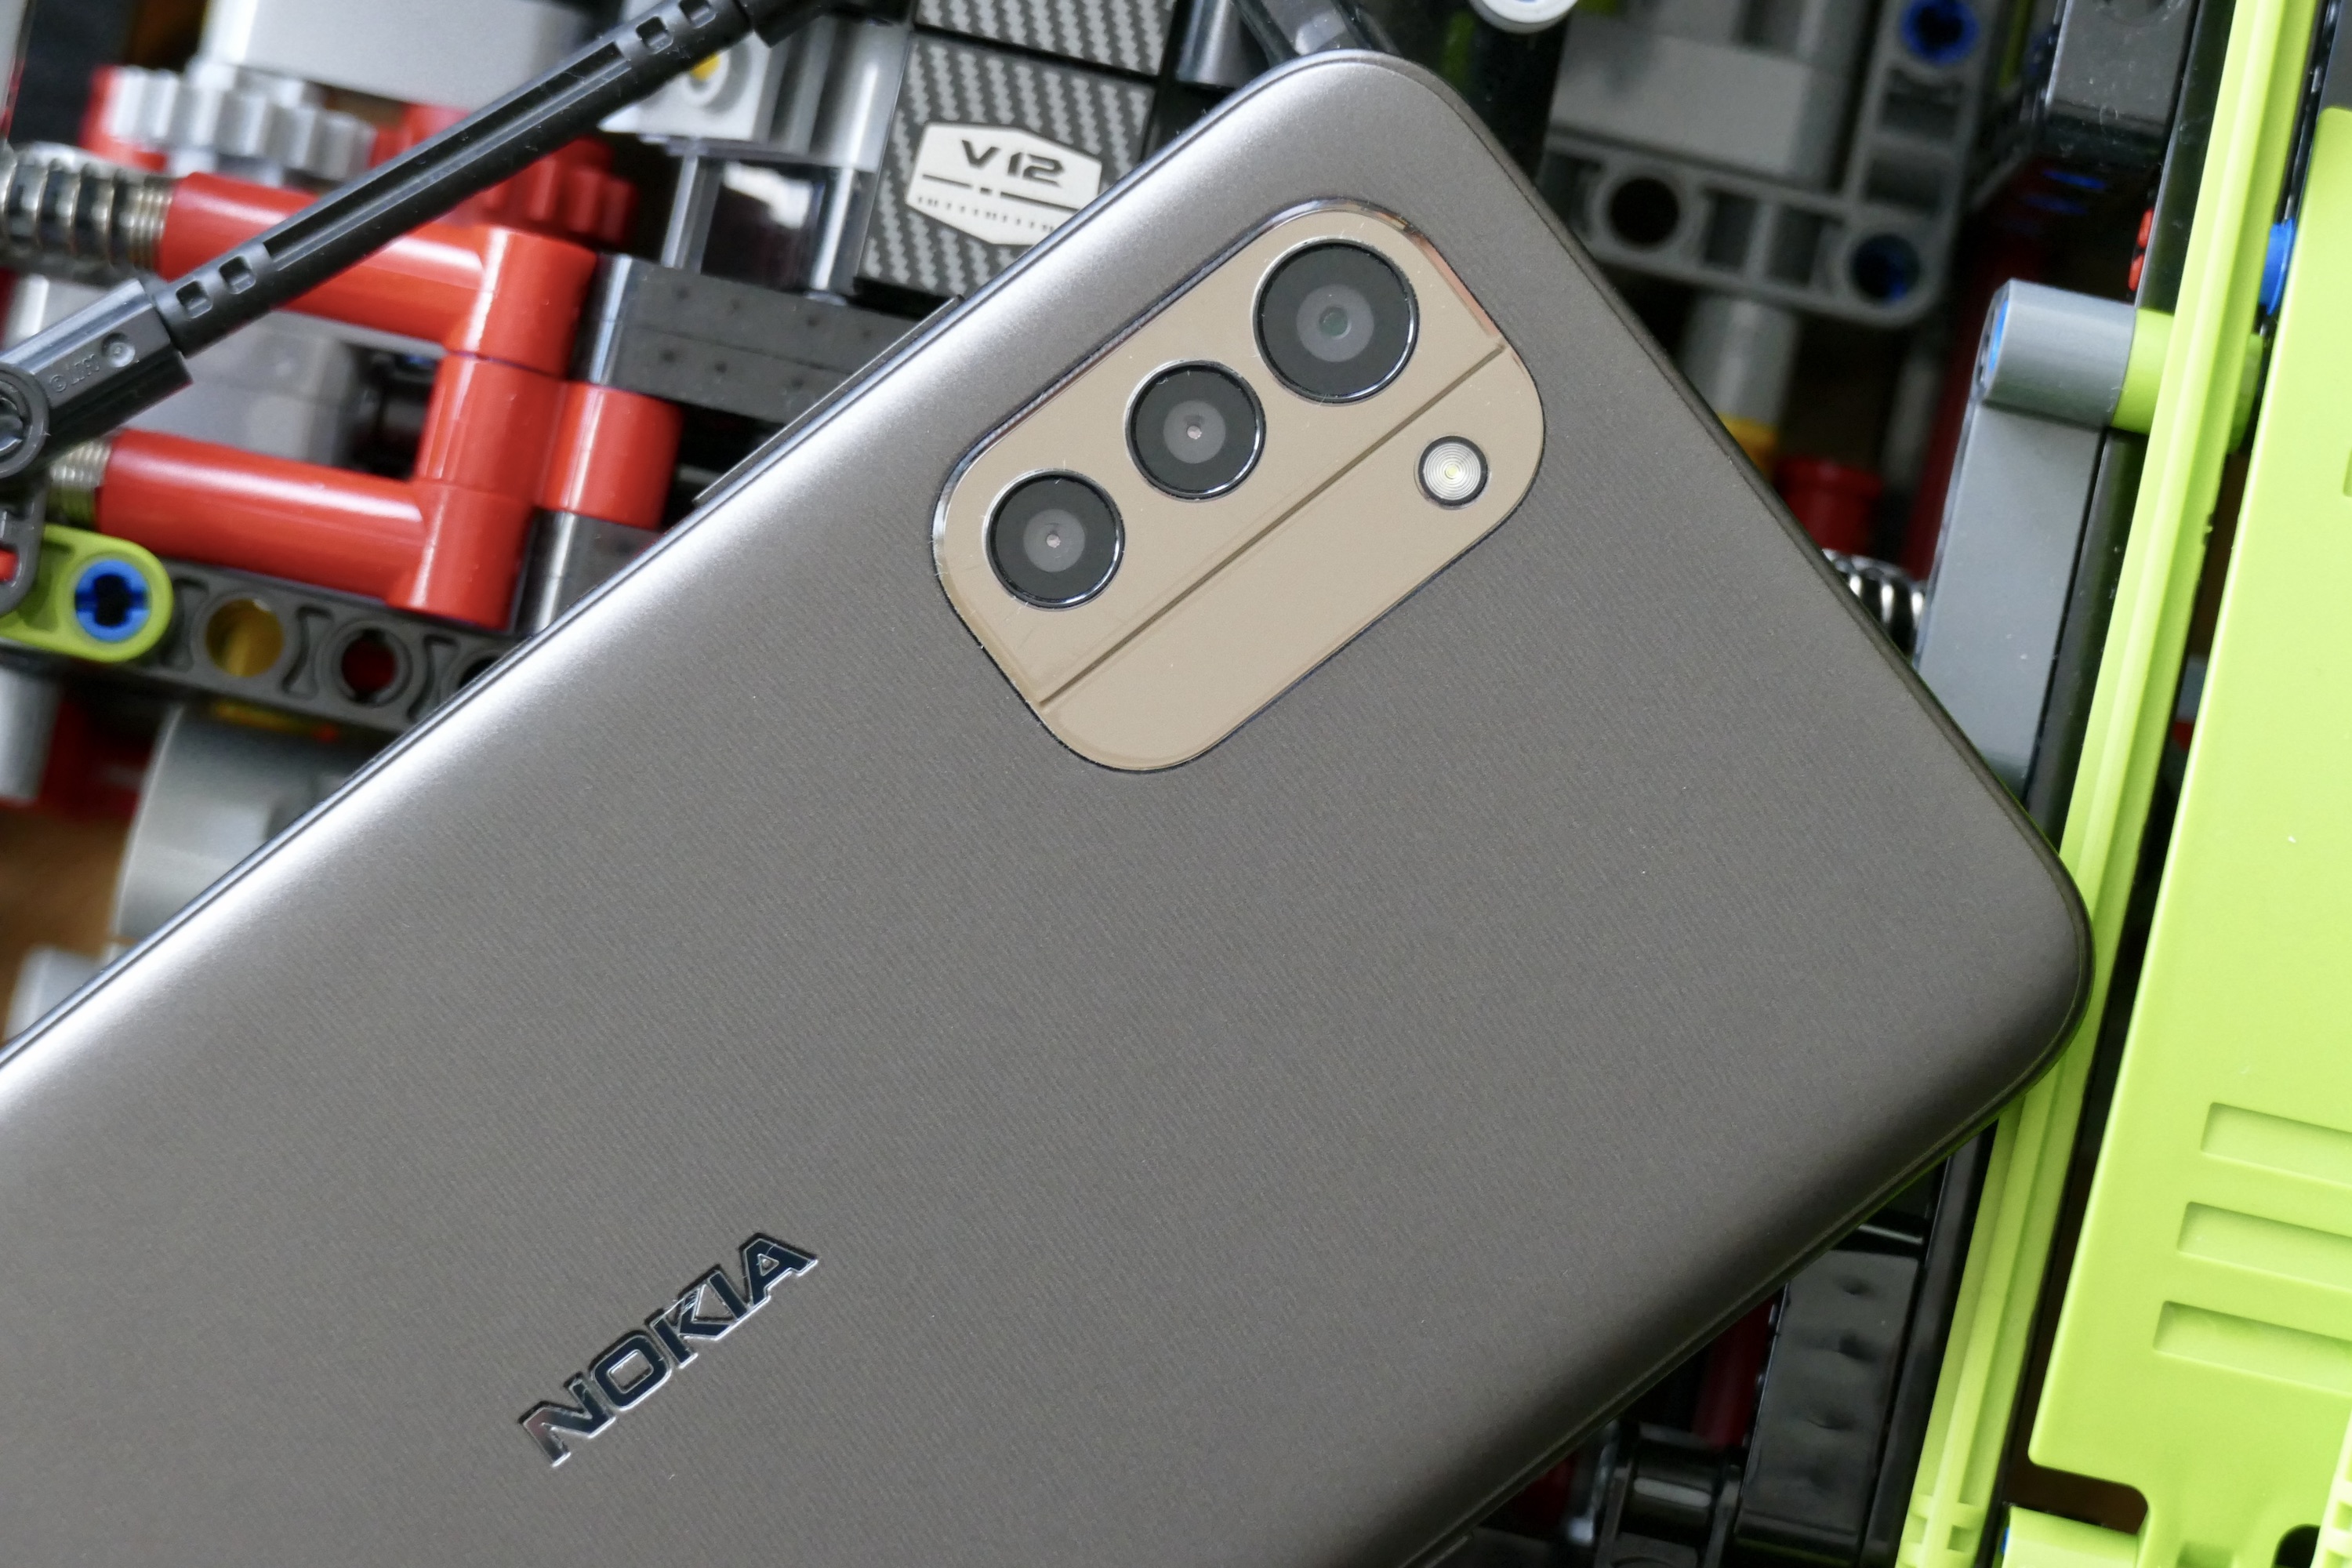 Il modulo fotocamera del Nokia G11.